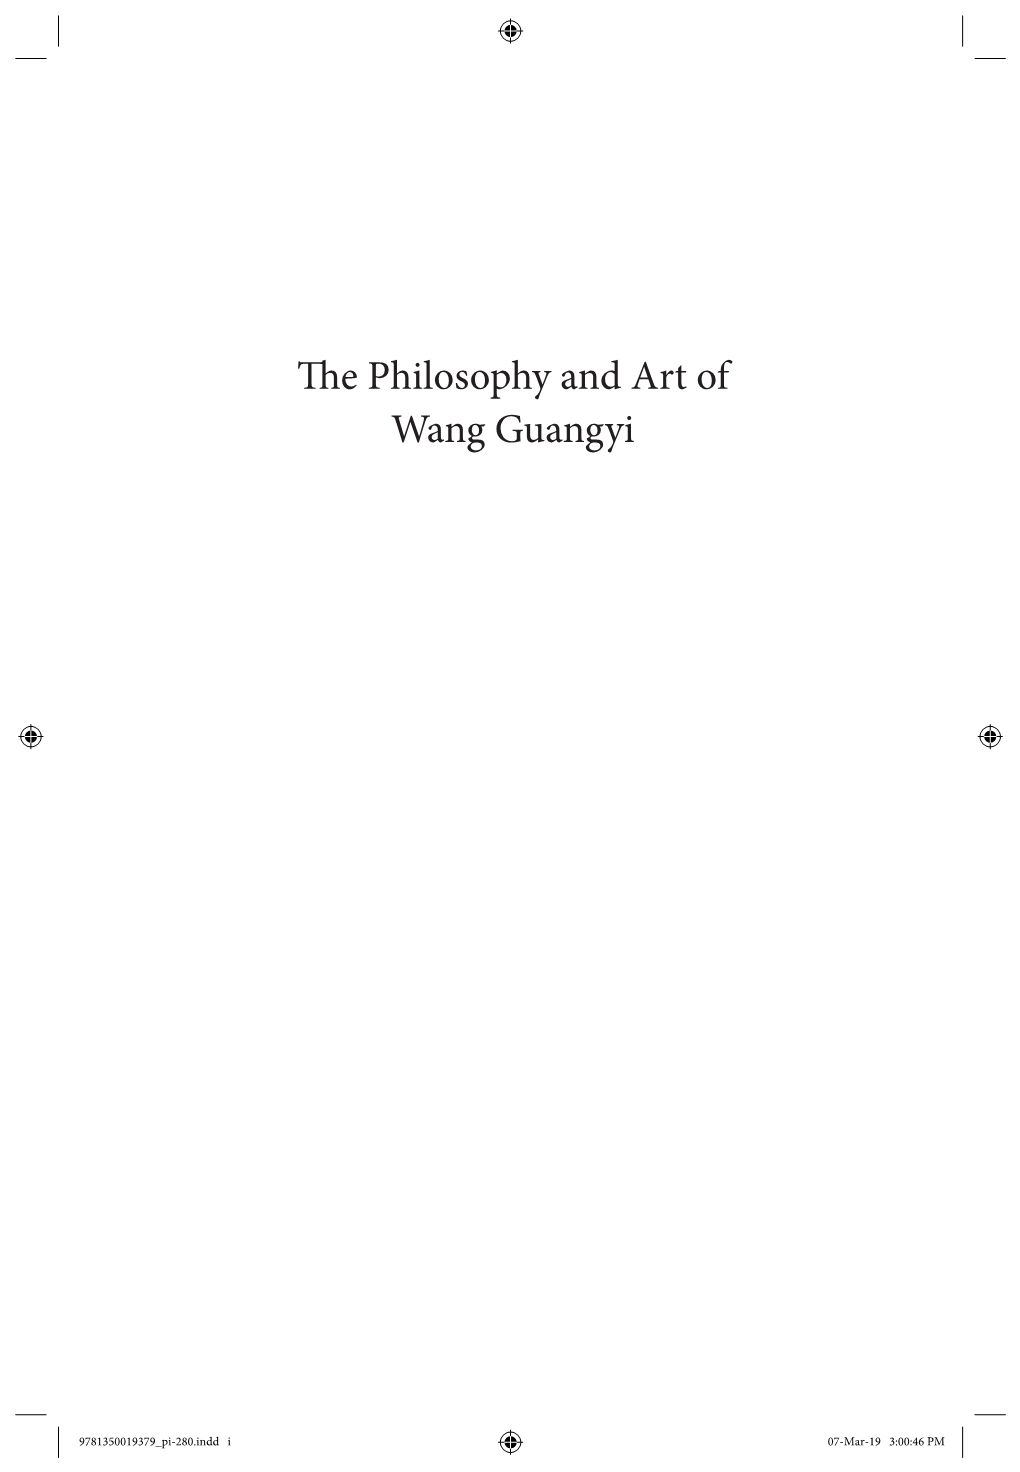 Te Philosophy and Art of Wang Guangyi